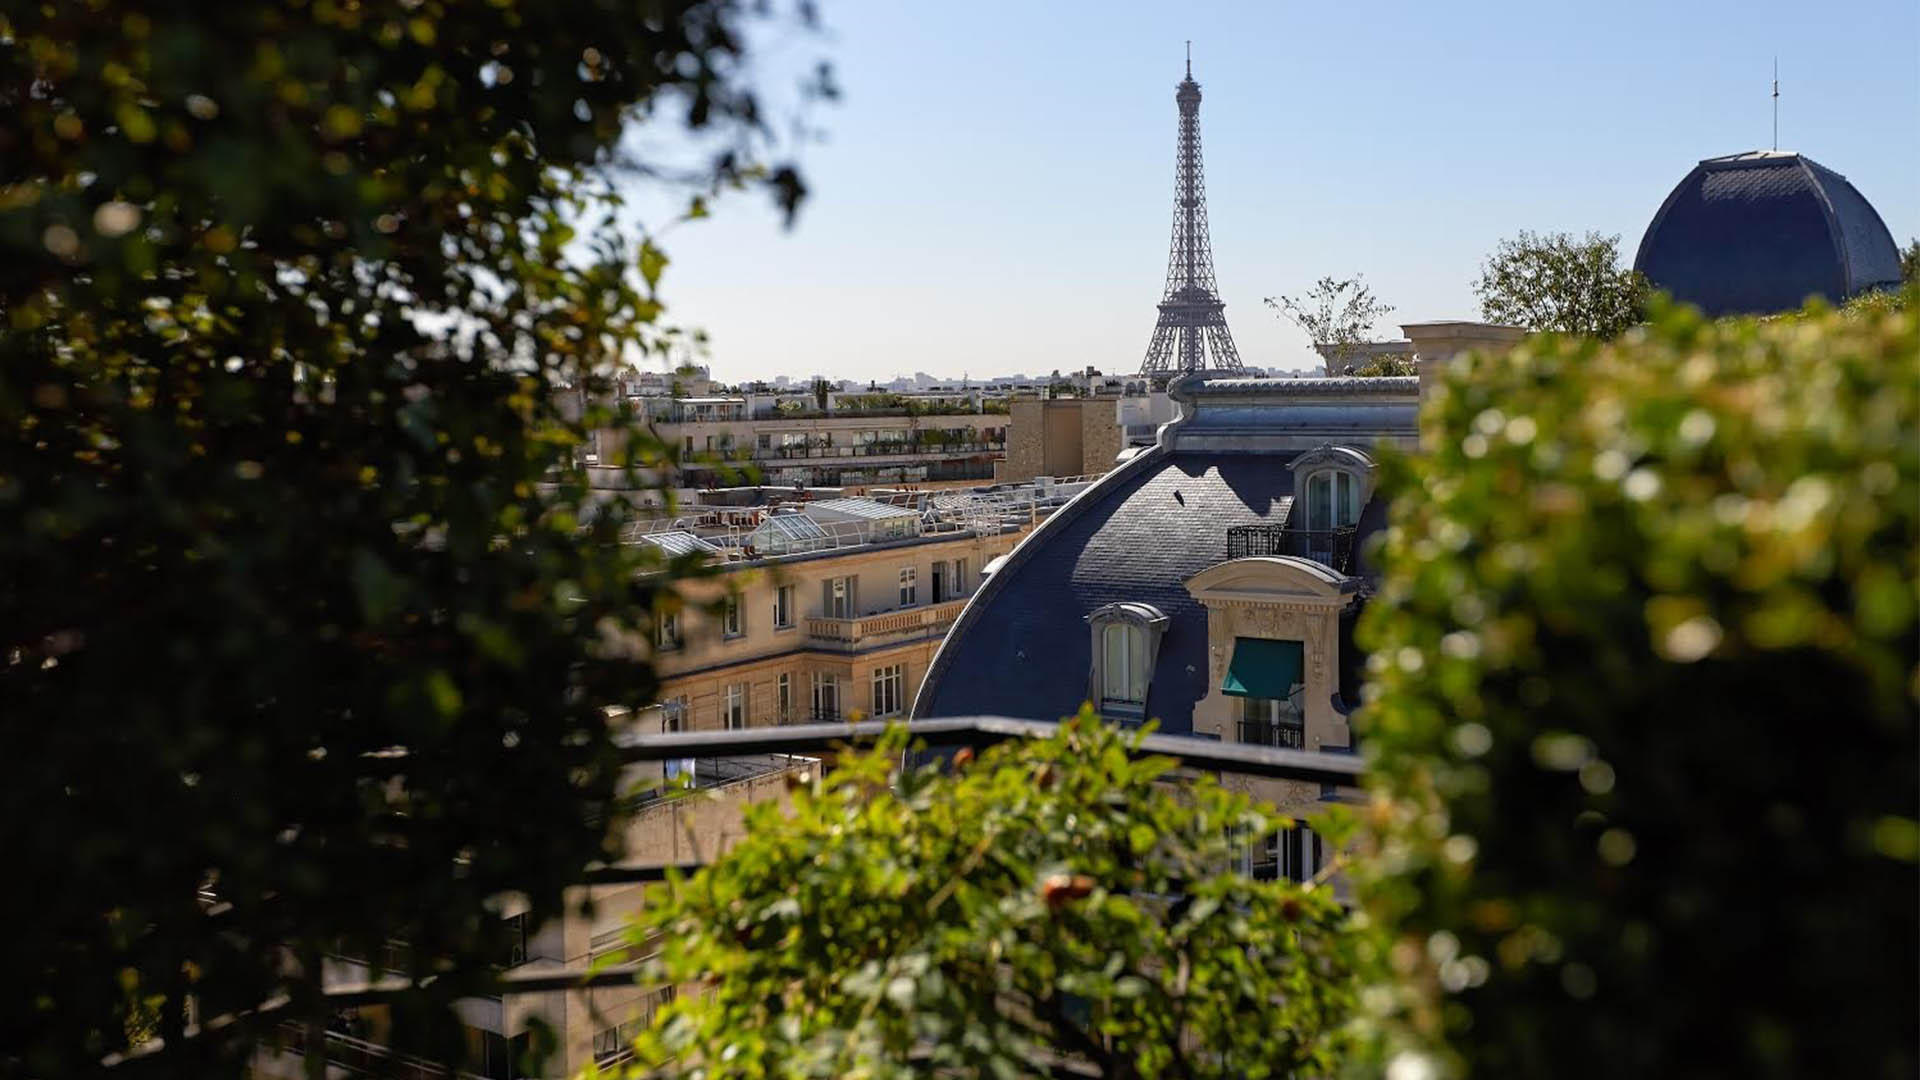 Revealed: Astonishing cost of Emily in Paris' lavish lifestyle